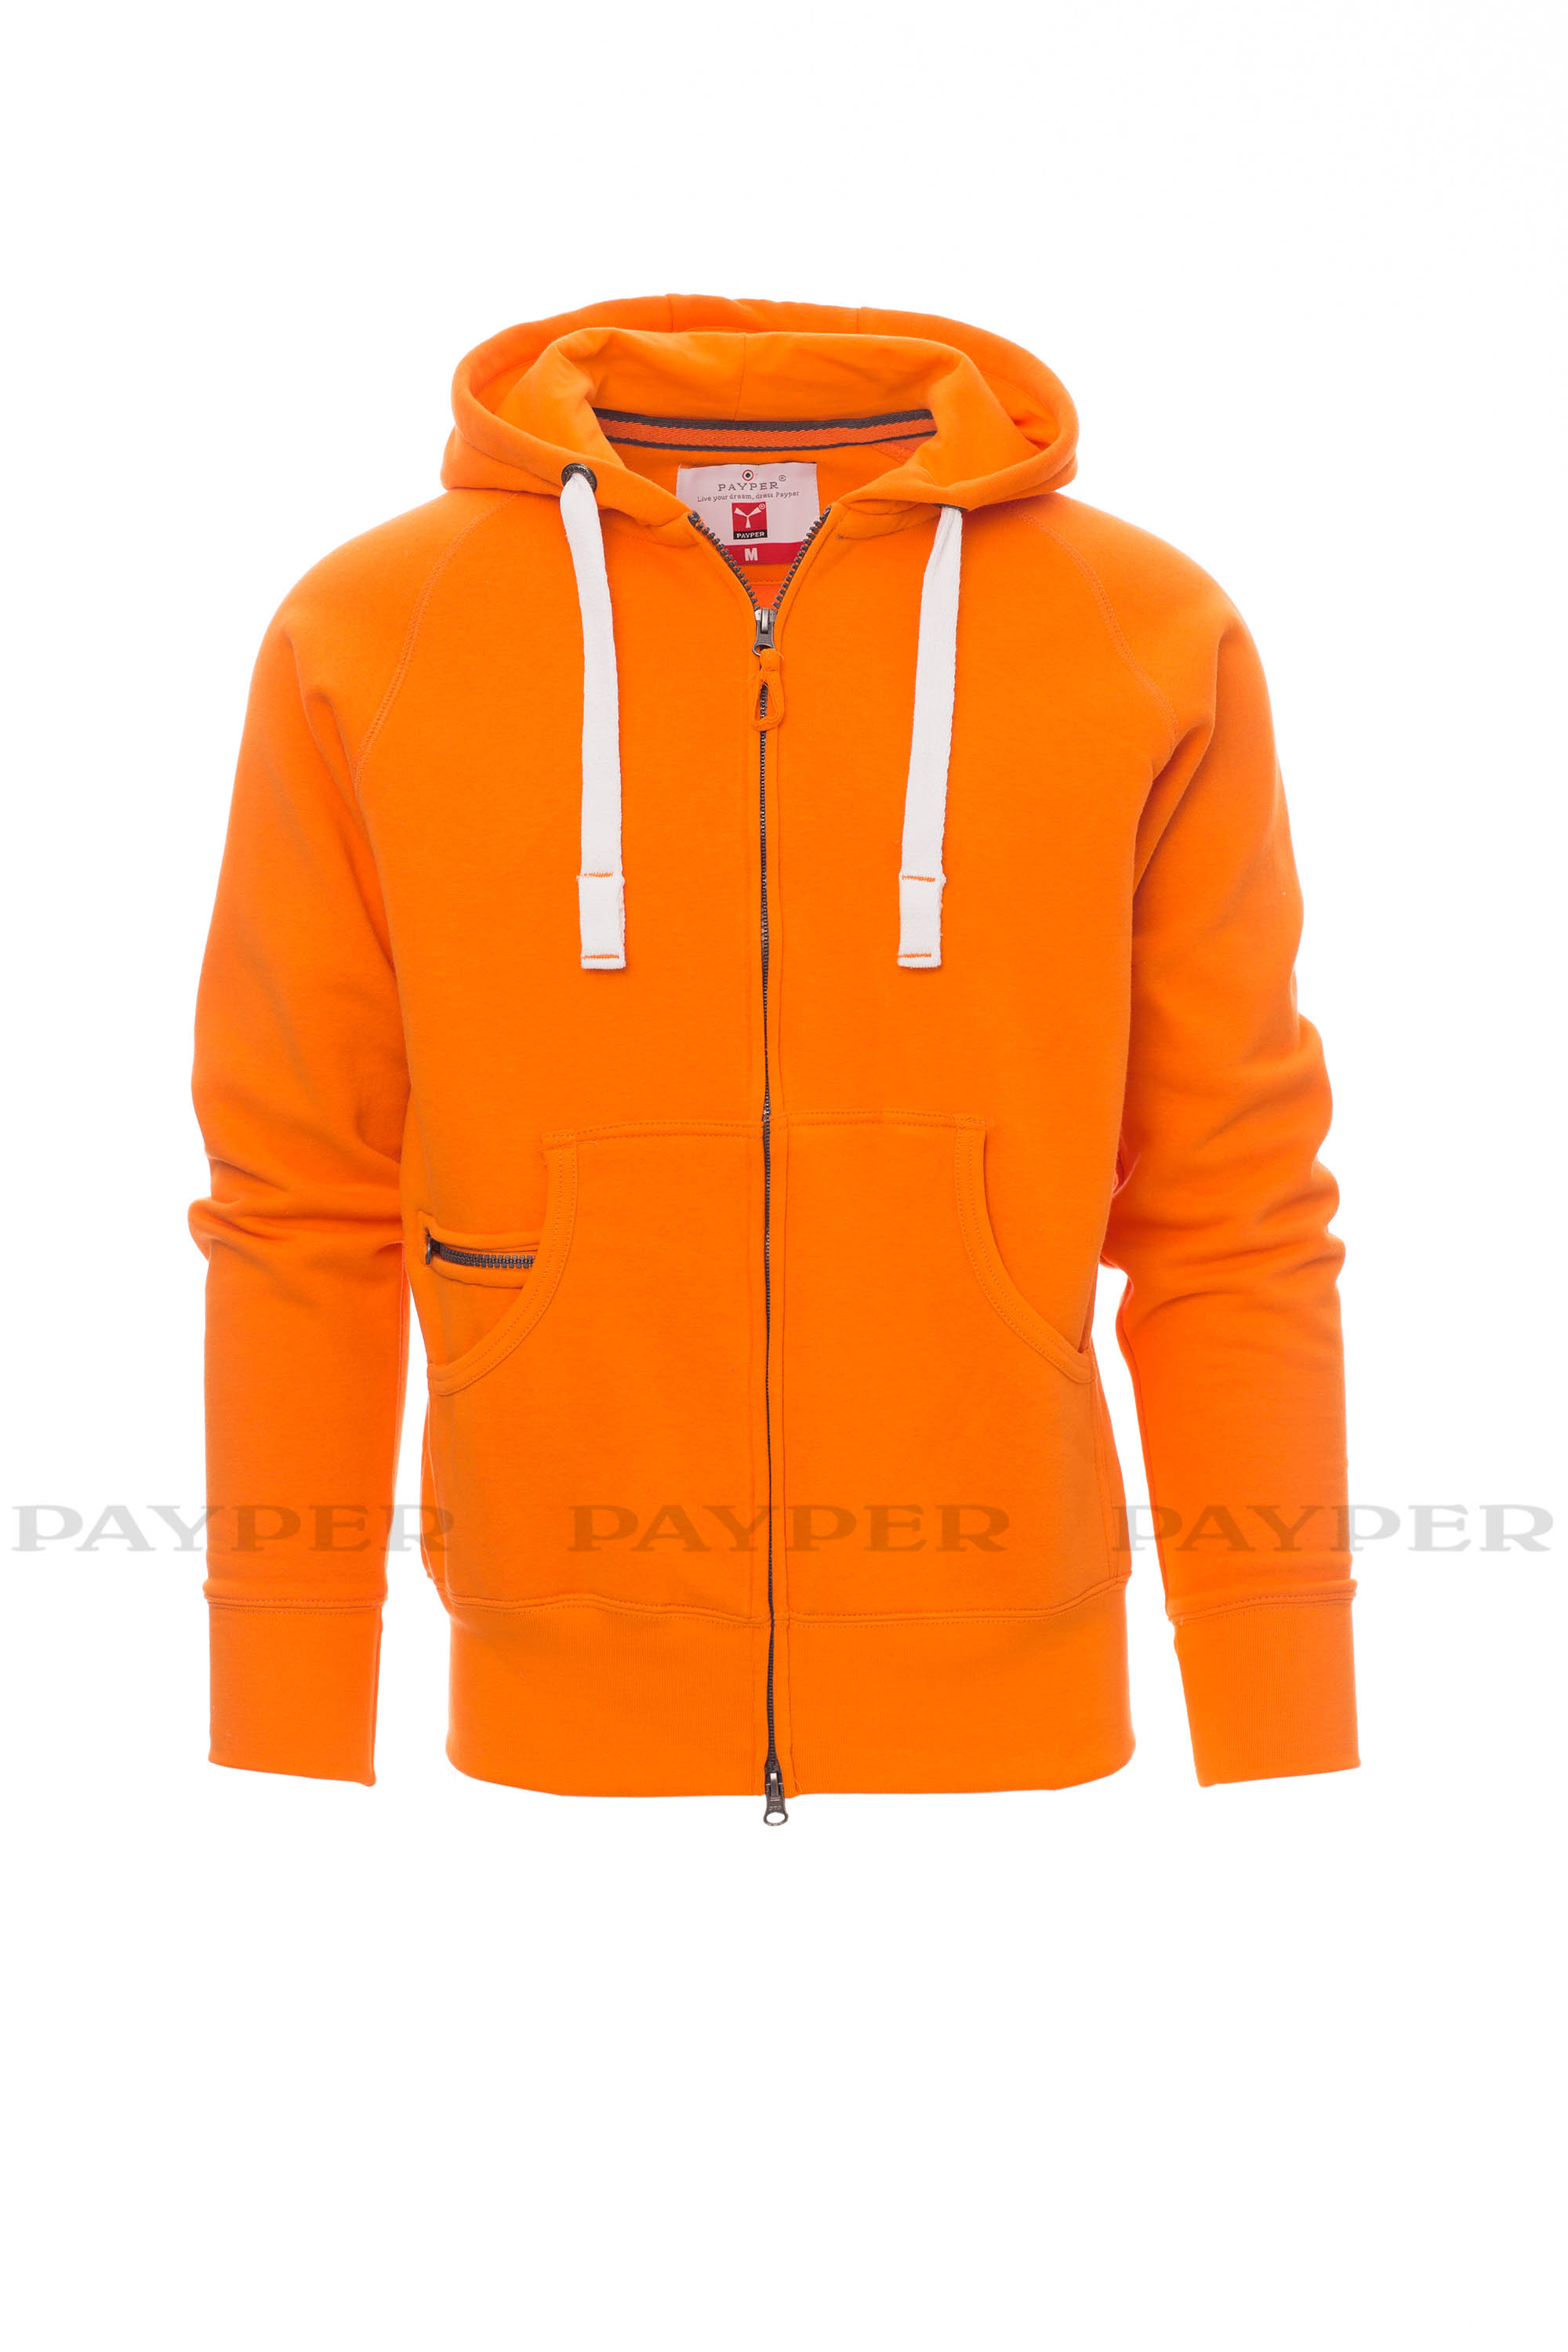 Felpa uomo arancione con zip in plastica e cappuccio da personalizzare  Dallas+ » Toppe e patch ricamate personalizzate